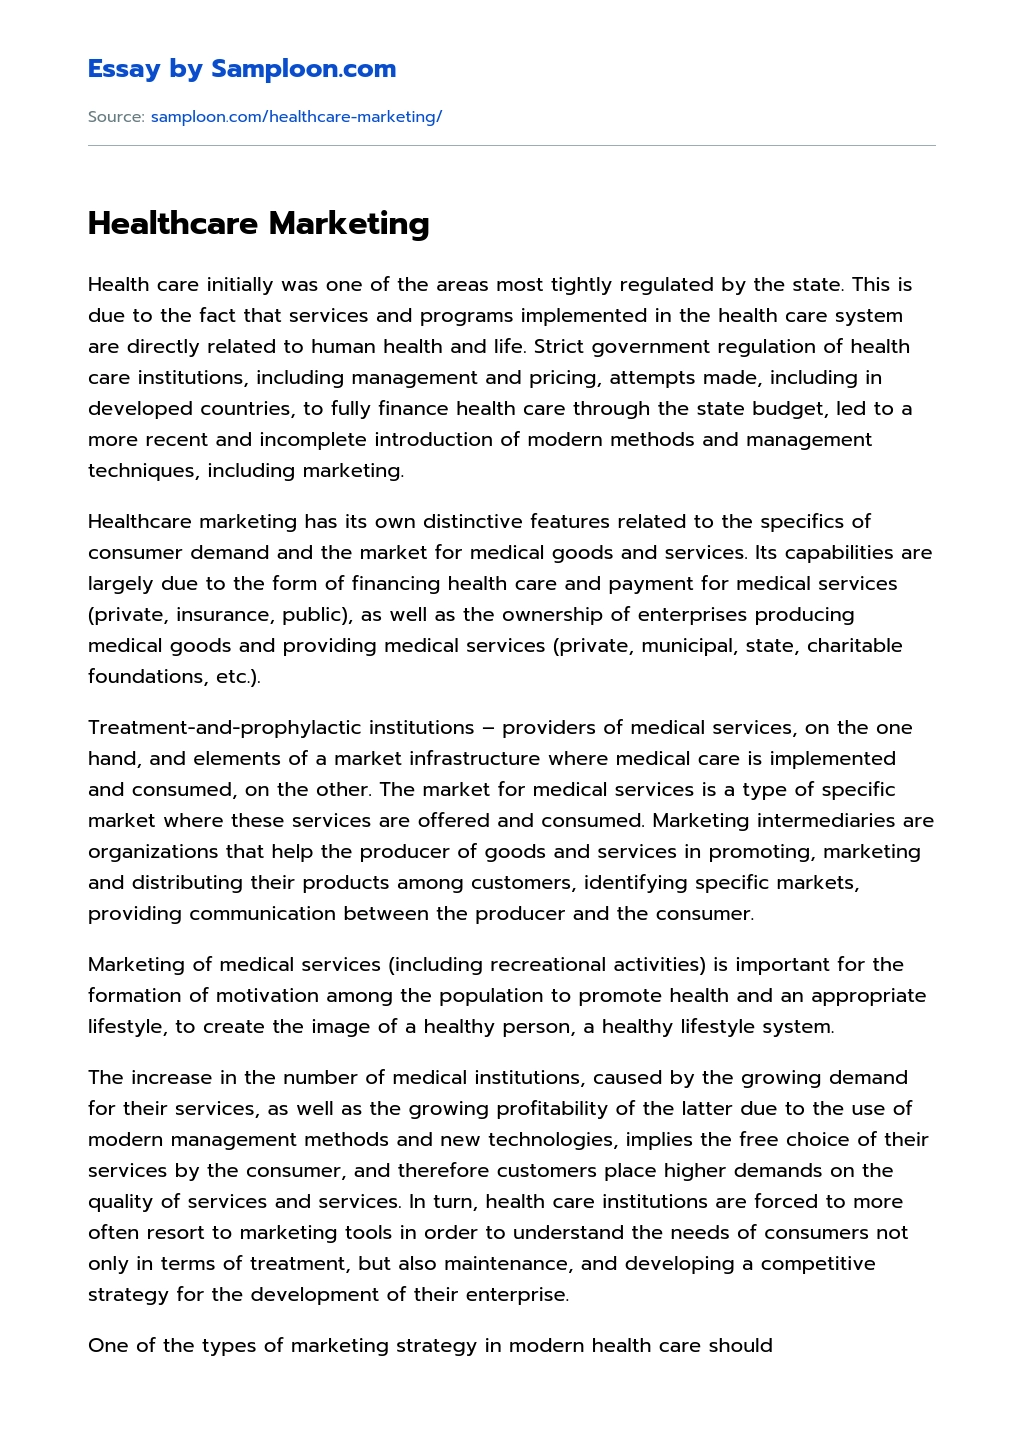 Healthcare Marketing essay